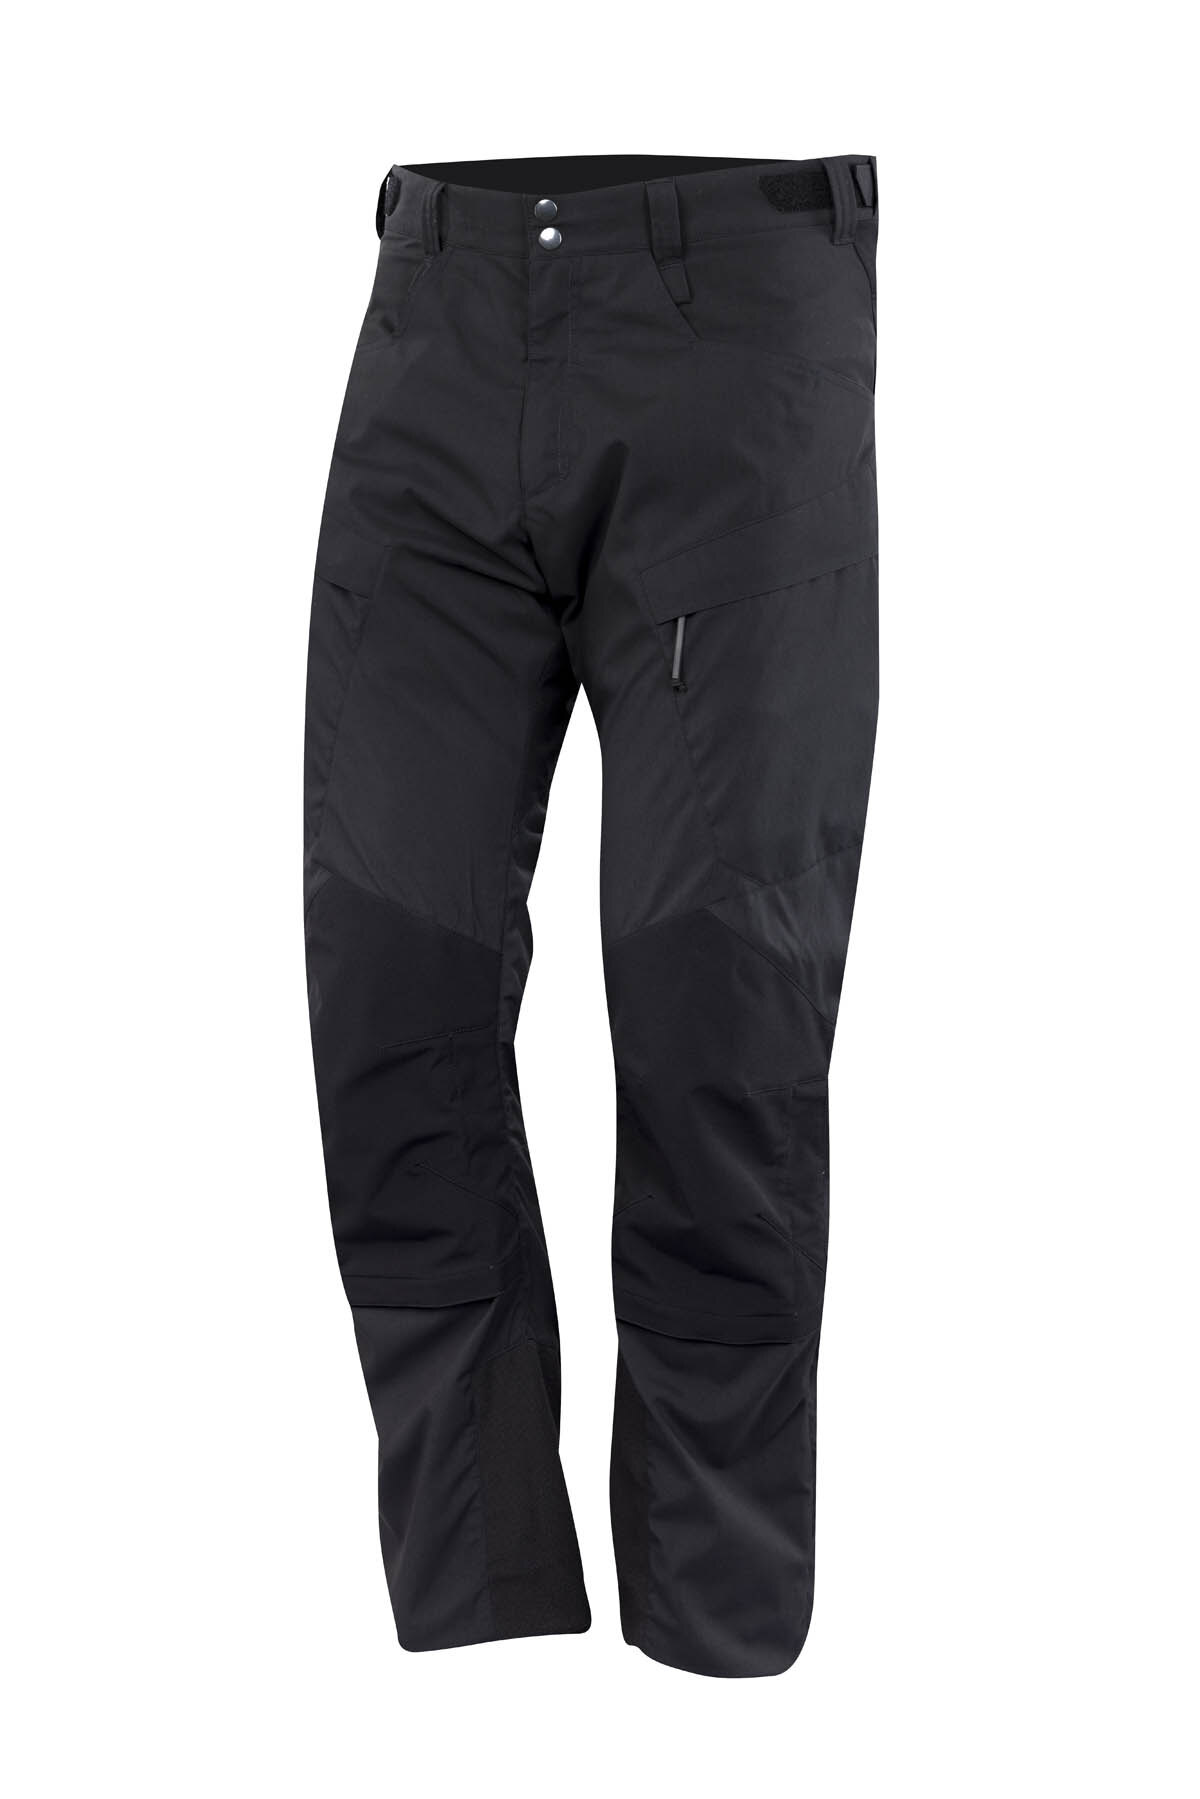 Softshellové kalhoty Operator Tilak Military Gear® – Černá (Barva: Černá, Velikost: S)